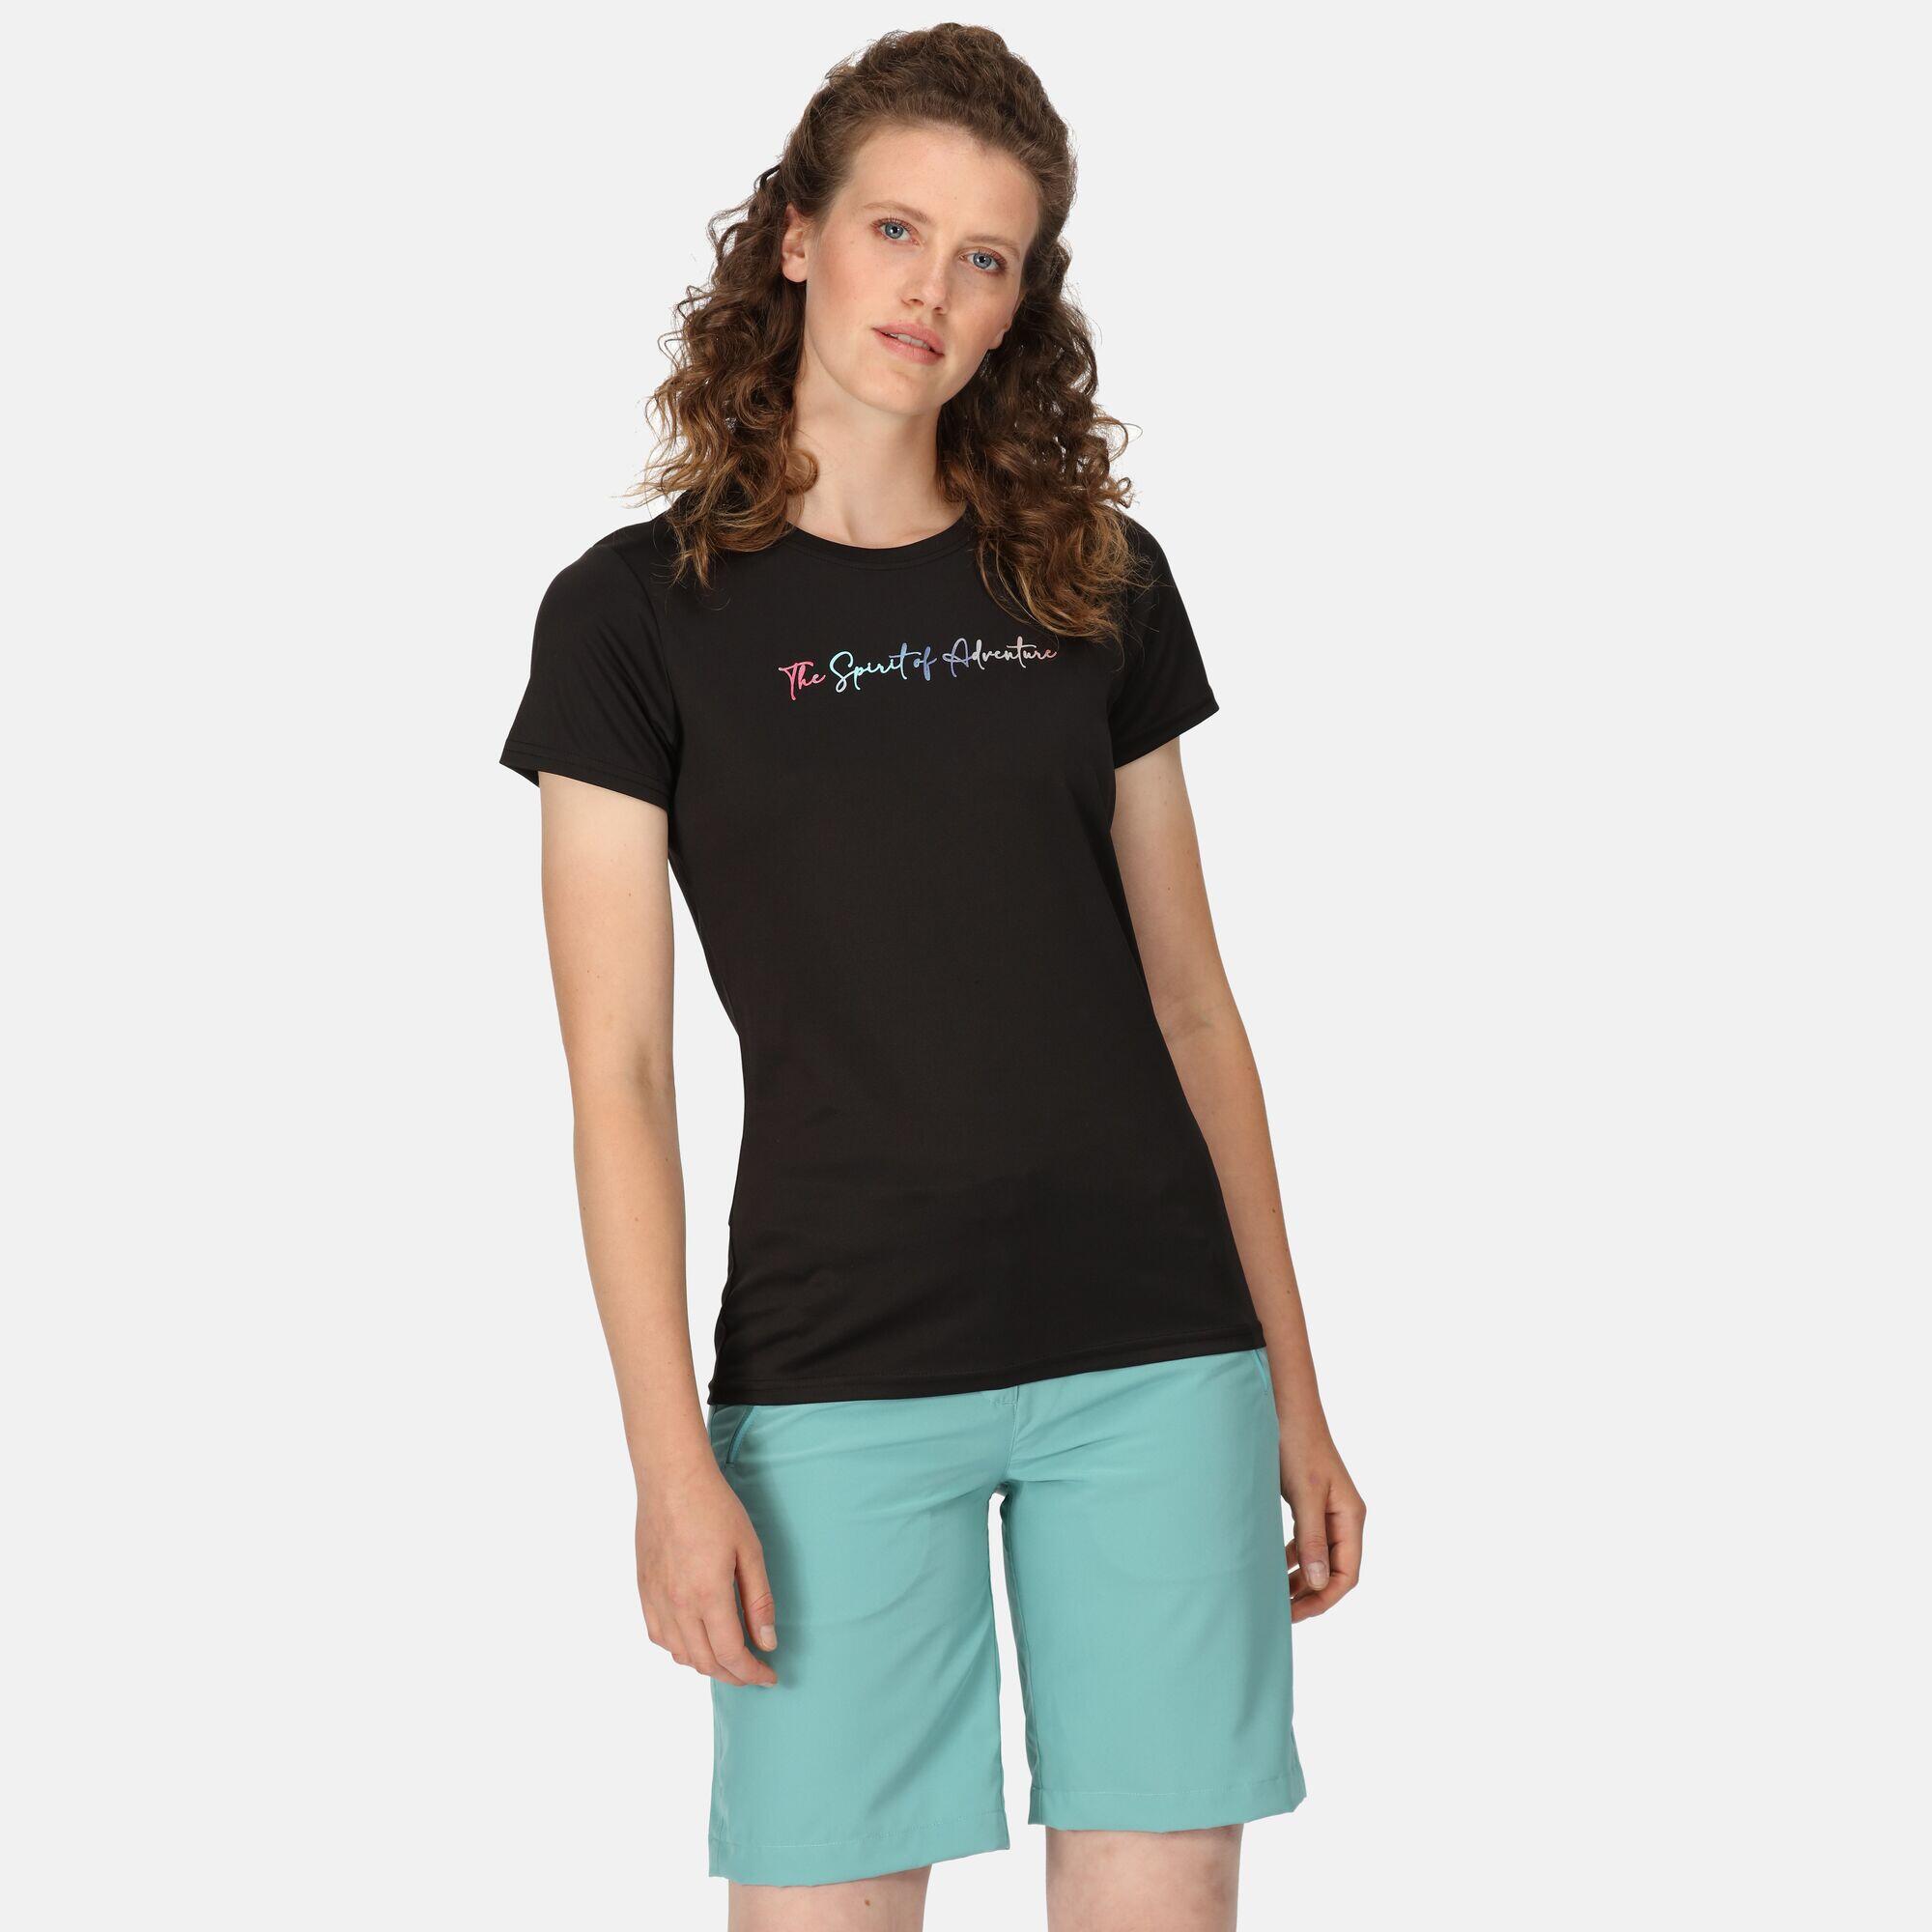 REGATTA Fingal VII Women's Walking Short Sleeve T-Shirt